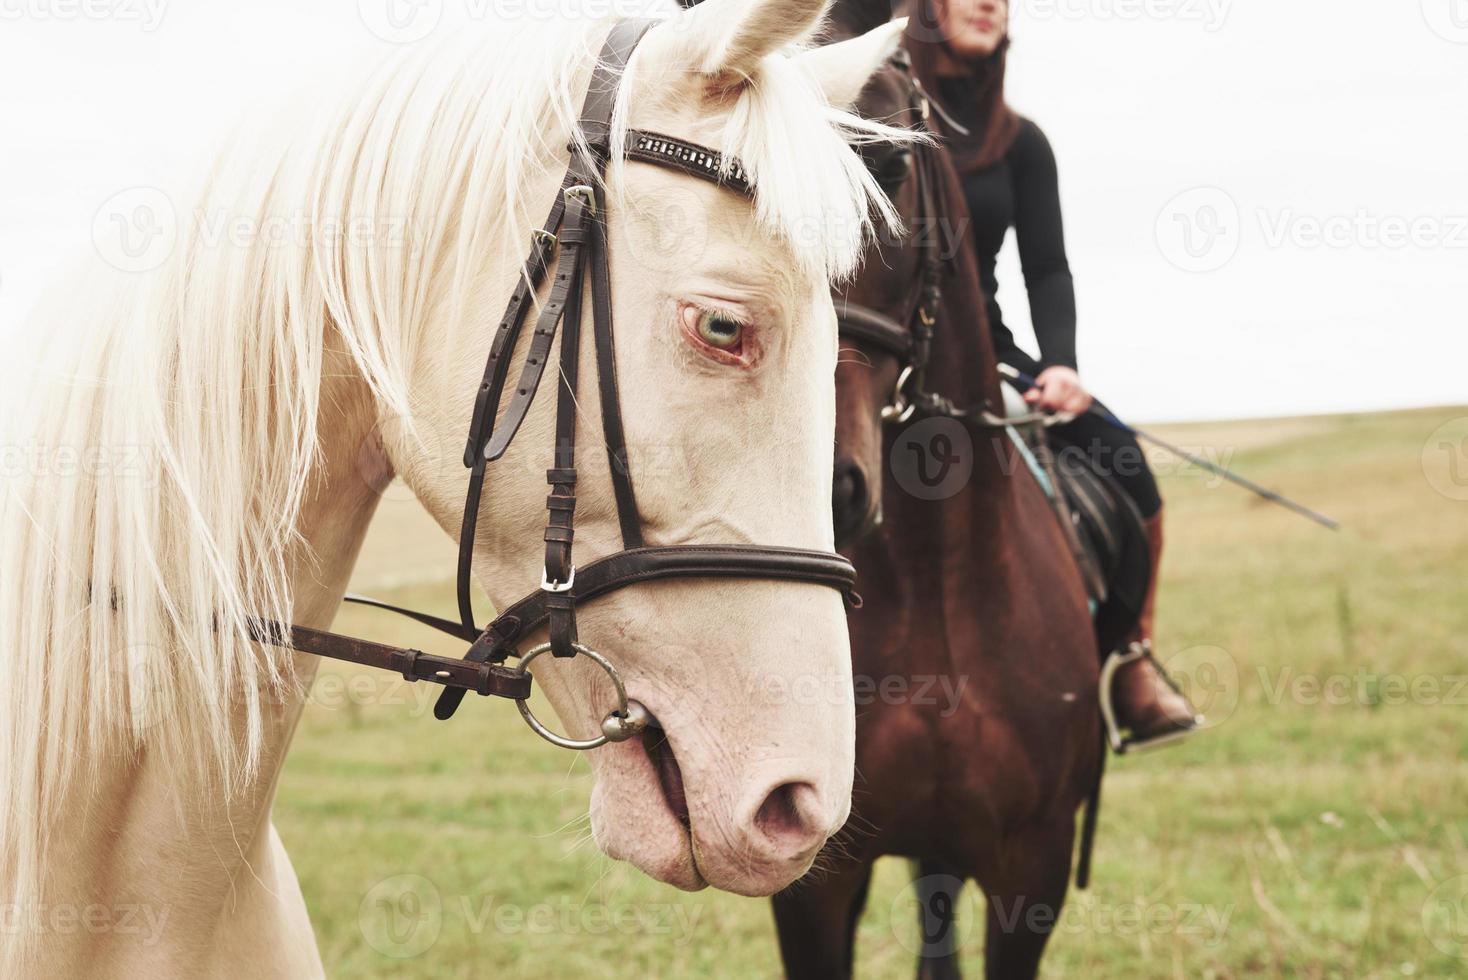 due bellissimi cavalli da sella, marroni e bianchi, stanno insieme con le loro teste l'uno verso l'altro foto